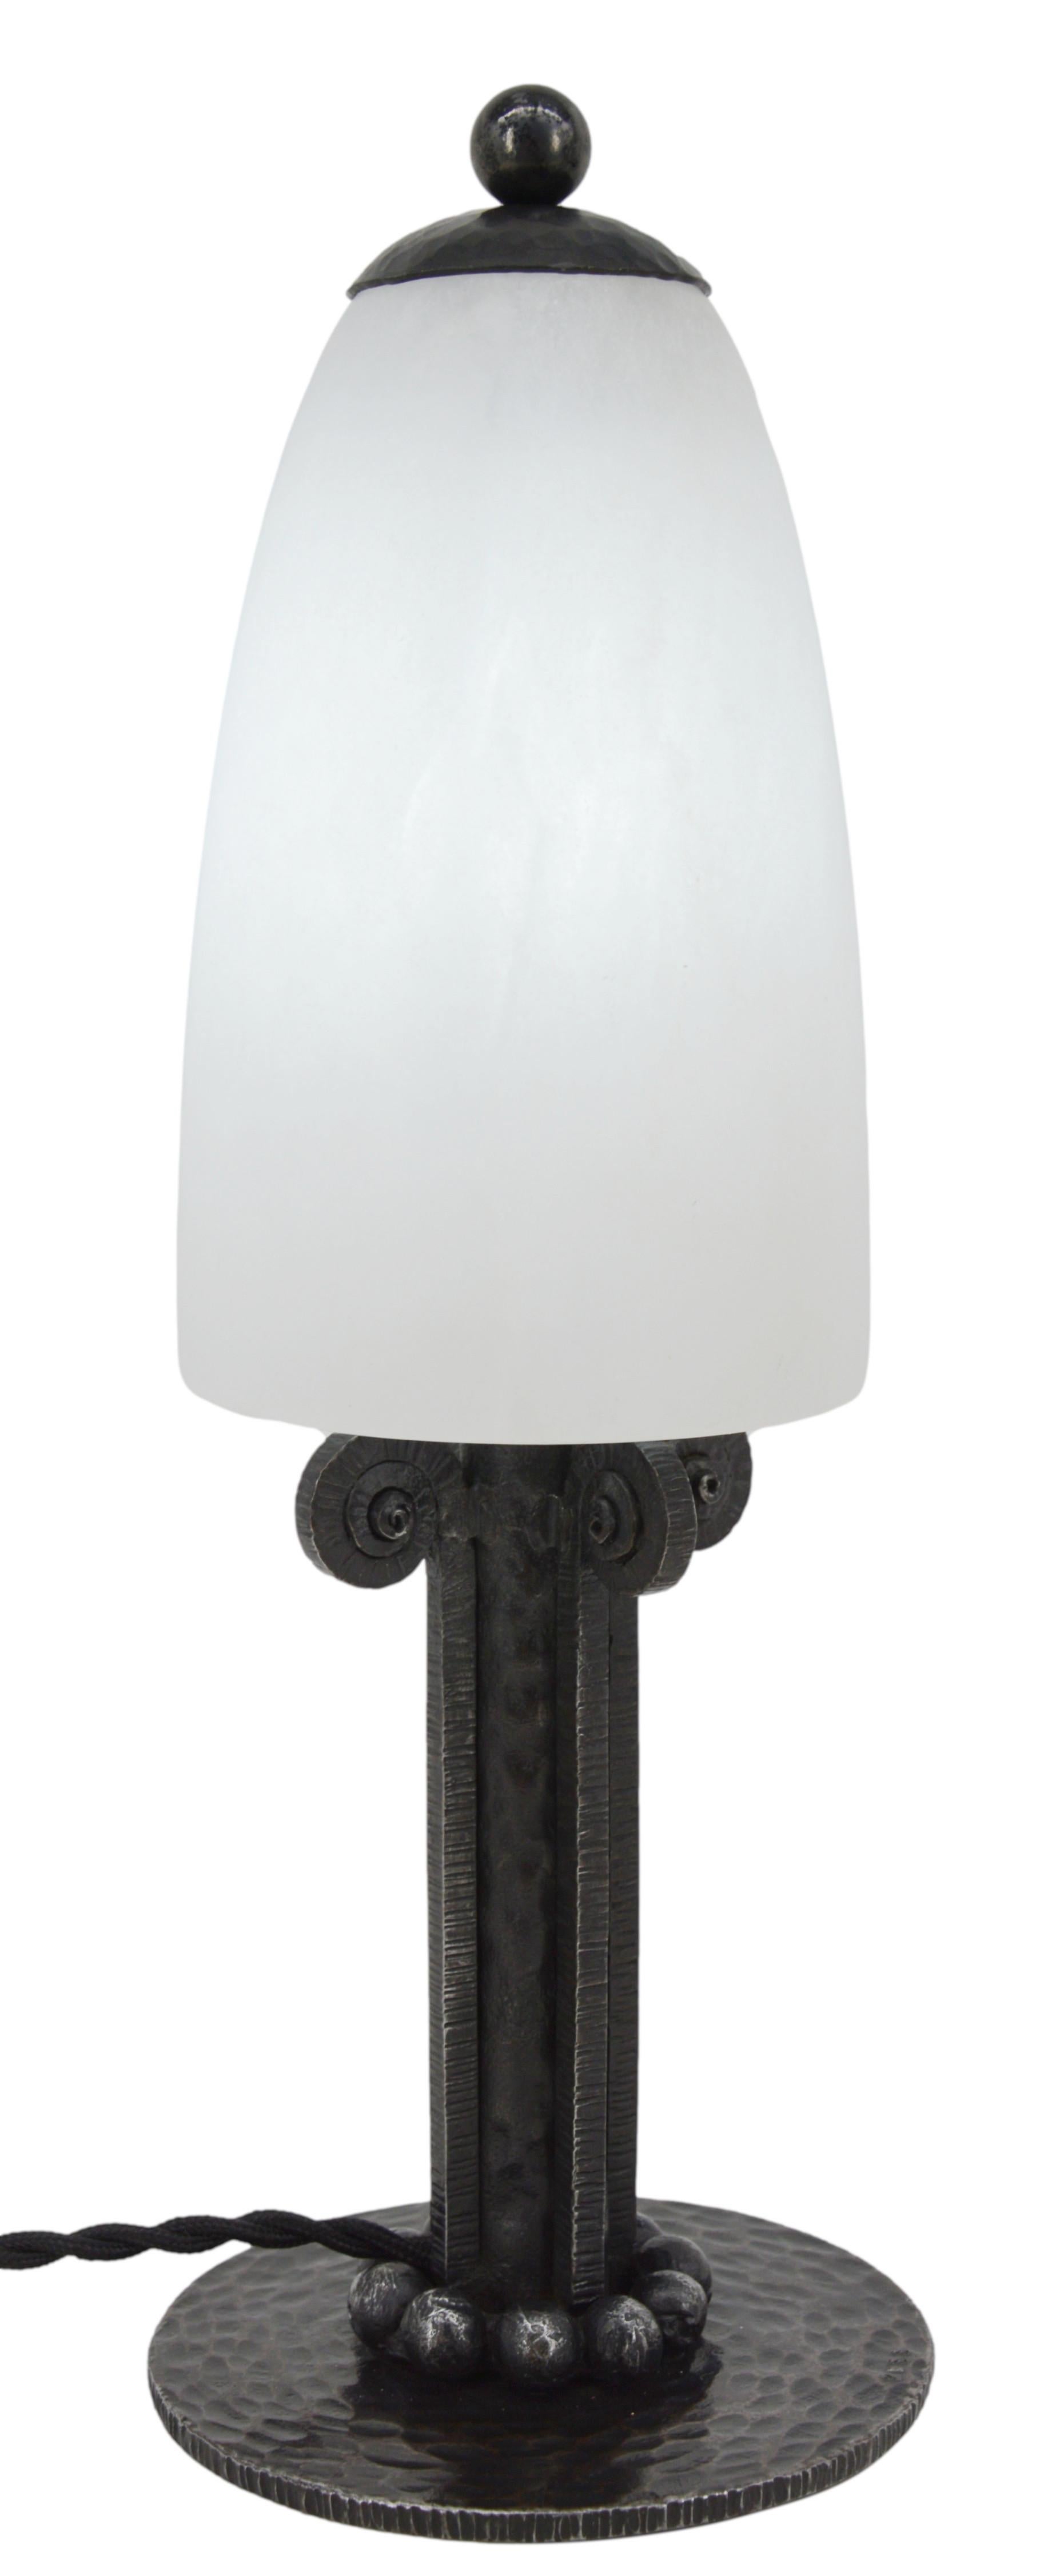 Lampe de table Art déco de Paul Kiss, France, années 1920. Albâtre et fer forgé. Les albâtres anciens ne peuvent être comparés aux nouveaux. Le vieil albâtre a des veines. Parfois, ils peuvent être confondus avec des fissures. Mais ce ne sont pas